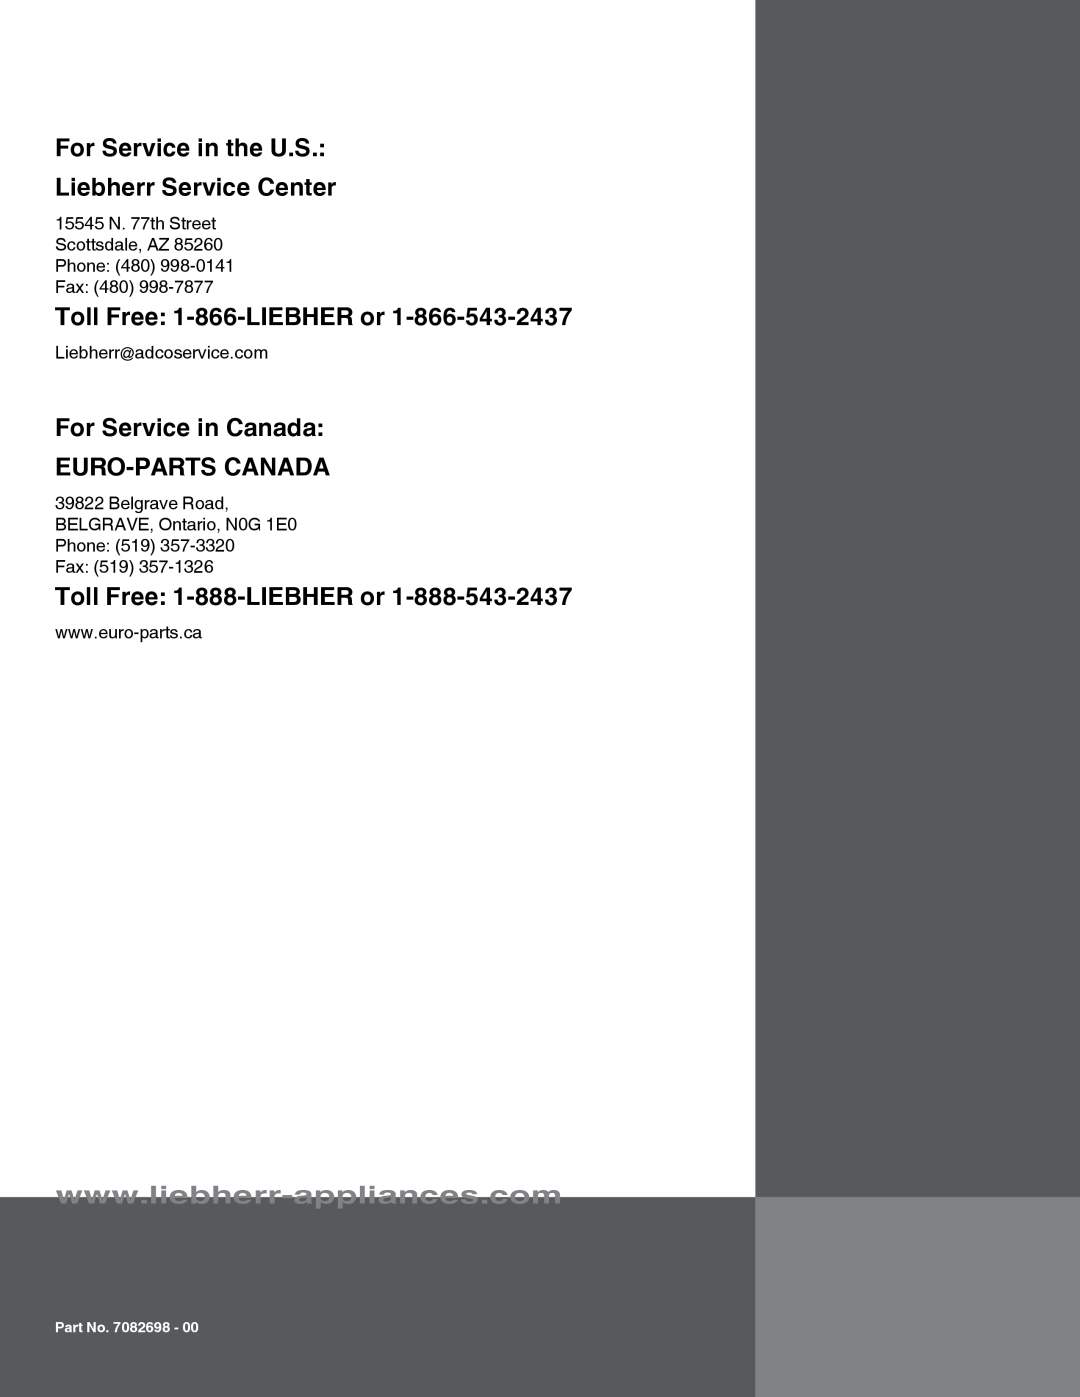 Liebherr HC 1011/1060 HC 1001/1050 121113 7082698 - 00 For Service in the U.S Liebherr Service Center, Part No. 7082698 